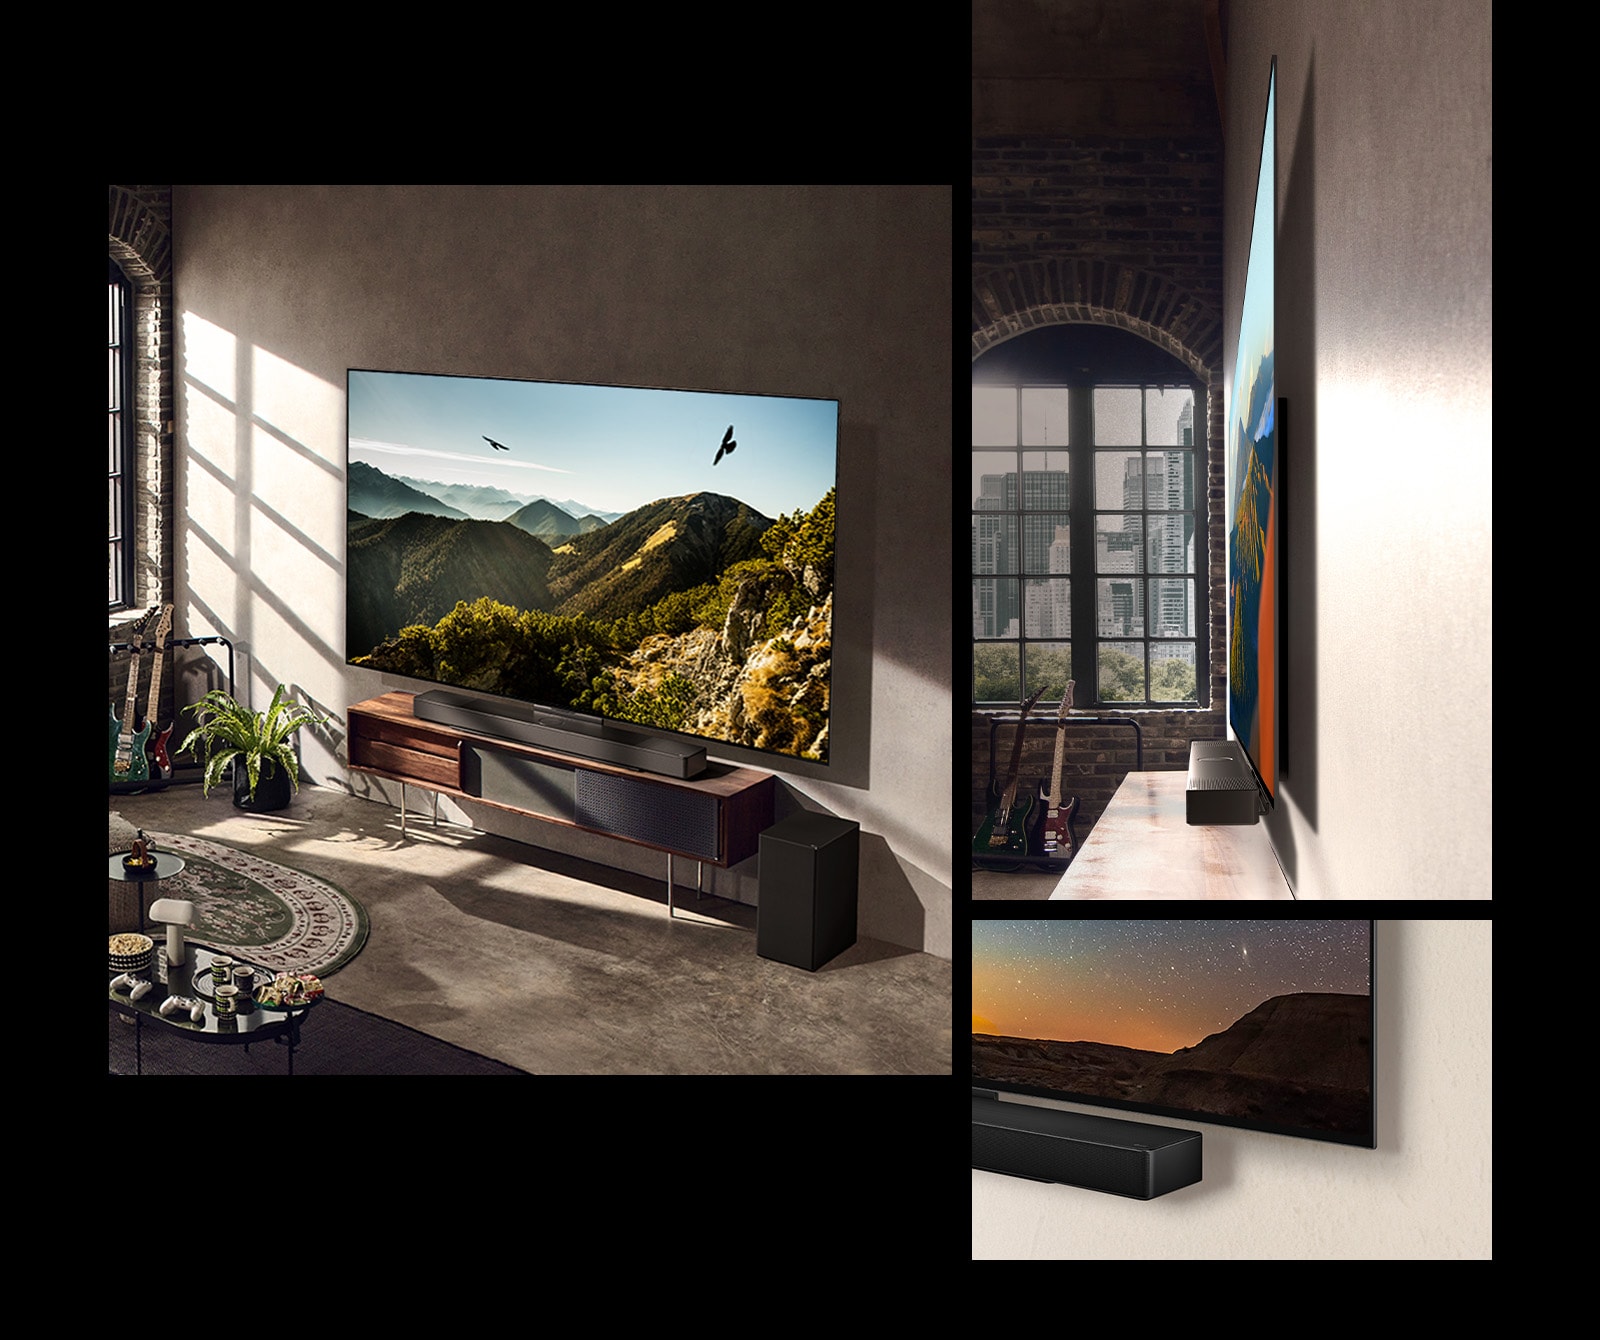 Slika LG OLED evo TV C3 z zvočno vrstico na steni v umetniški sobi.  Stranski pogled na LG OLED evo TV C3 pred oknom s pogledom na mestno pokrajino.  Spodnji kot LG OLED evo TV C3 z zvočno vrstico.